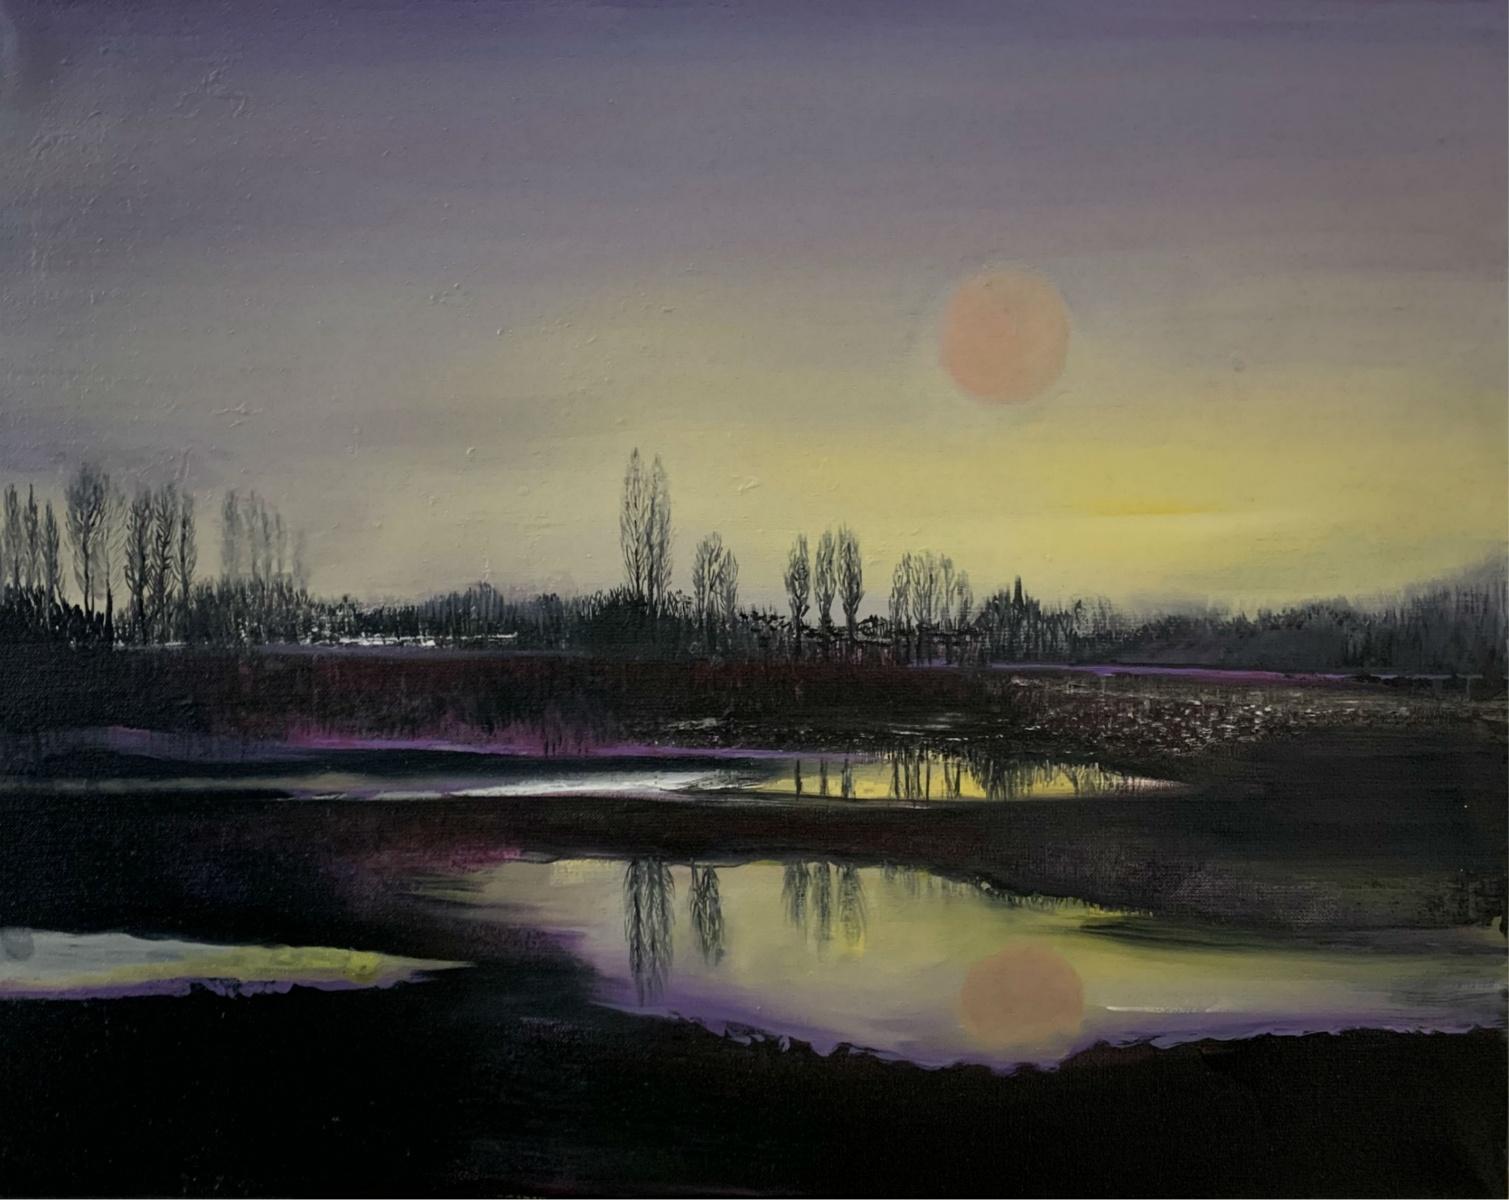 Landscape Painting Barbara Hubert - Un lac - Peinture à l'huile - Figuratif, paysage, coloré, violet et jaune